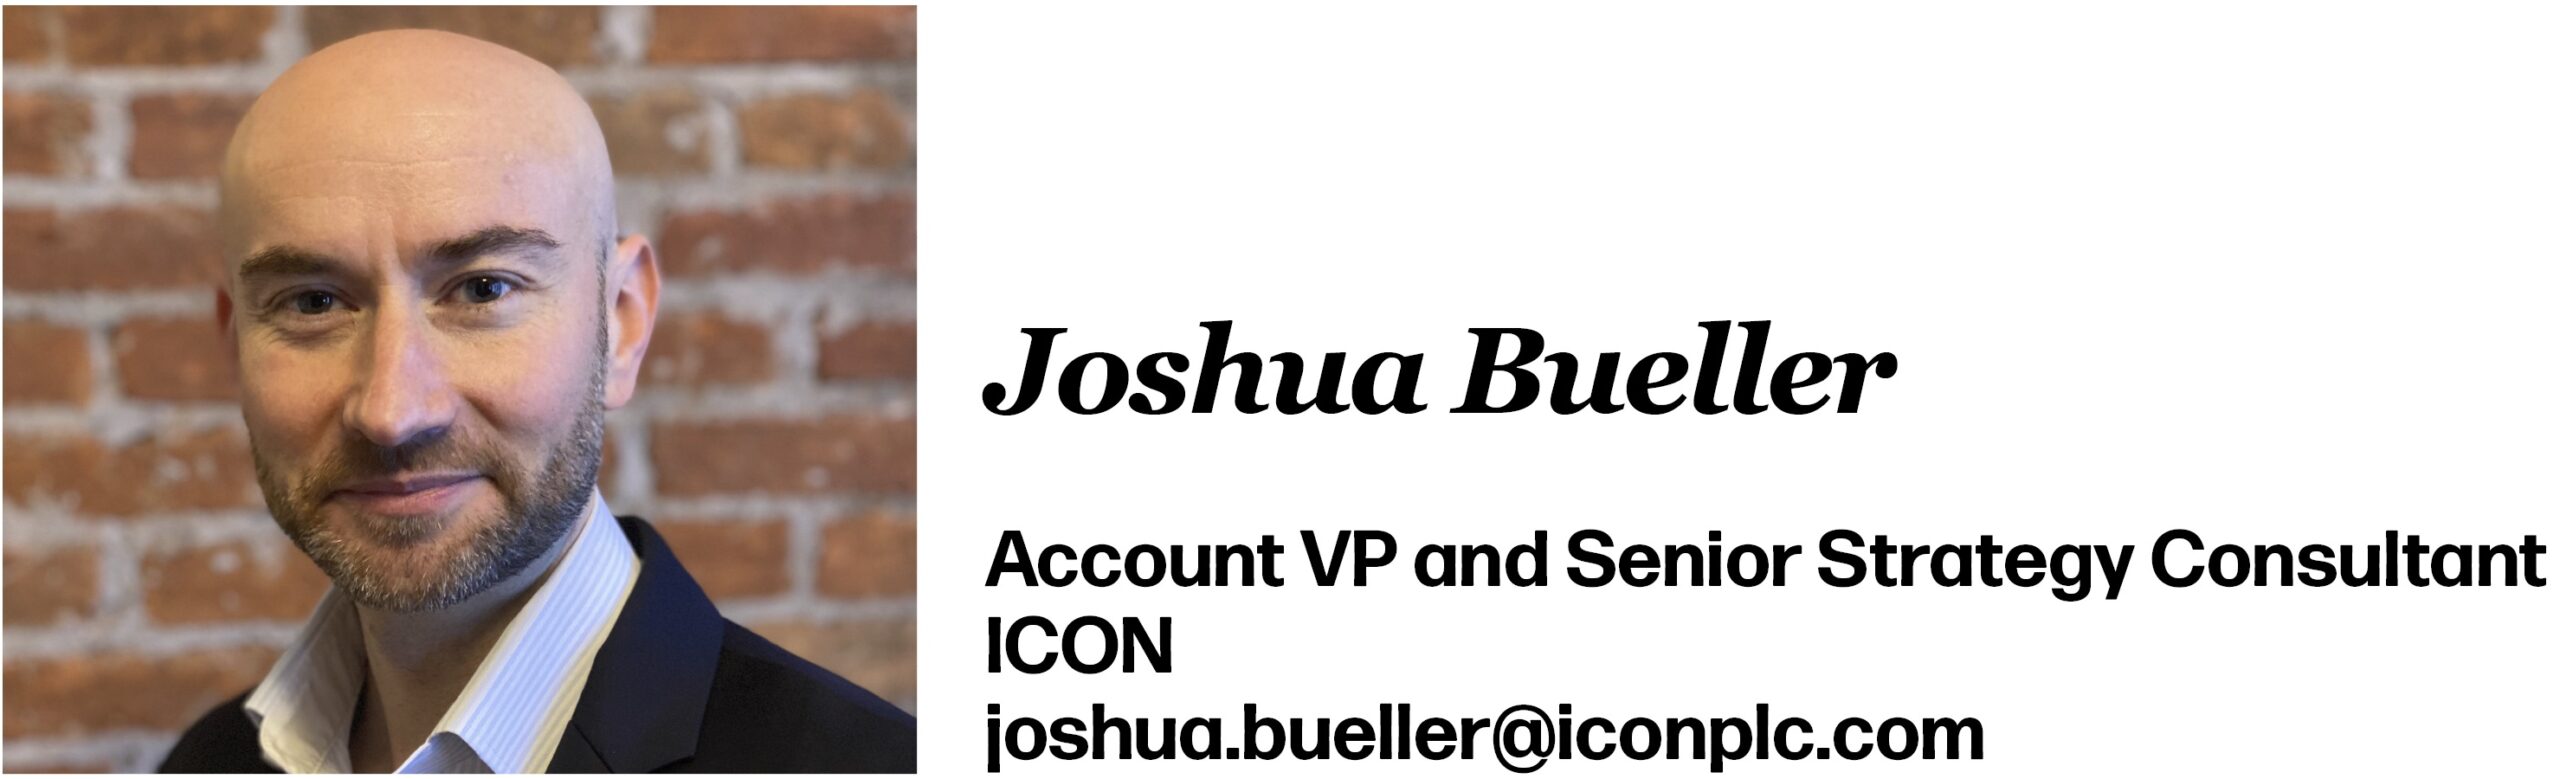 Joshua Bueller Account VP and Senior Strategy Consultant ICON joshua.bueller@iconplc.com